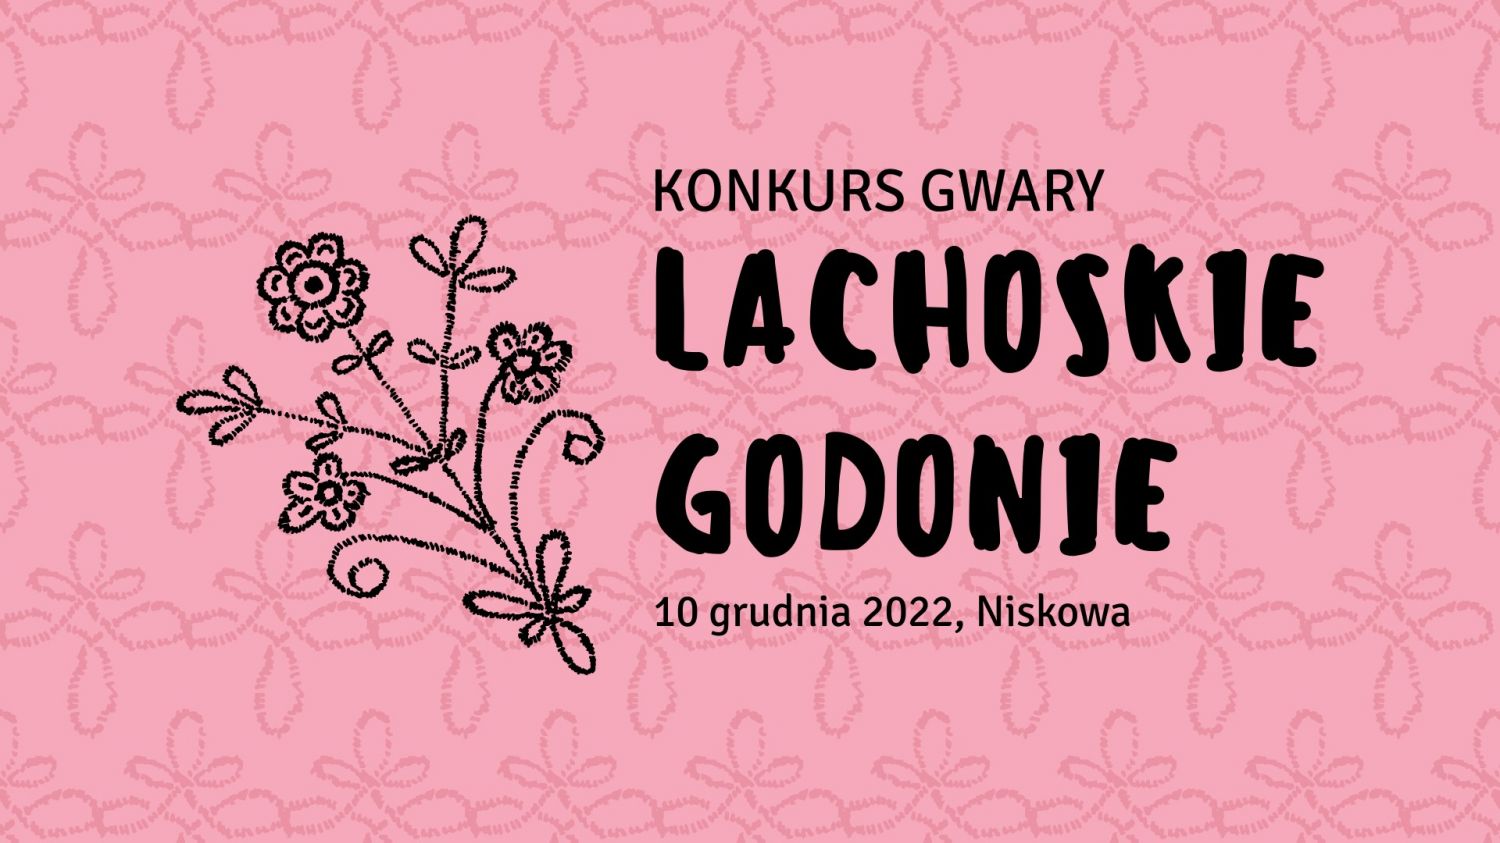 Lochowskie Godonie